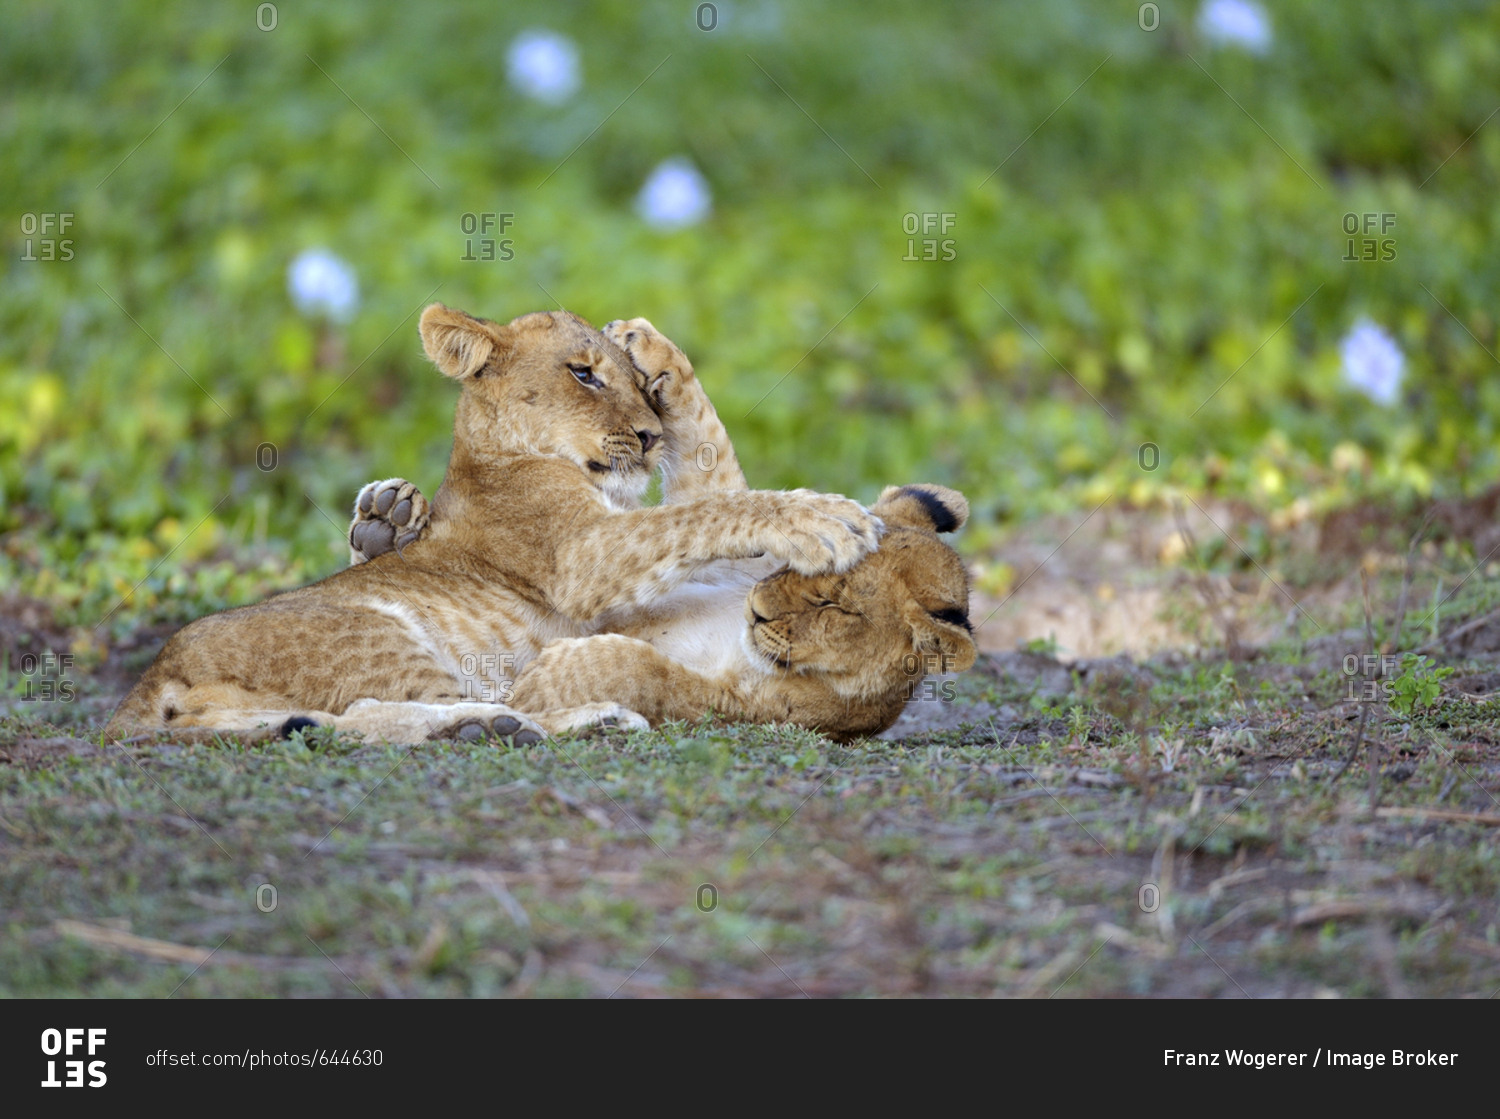 Young lions (Panthera leo), lion cubs, play fighting, Lower Zambezi National Park, Zambia, Africa